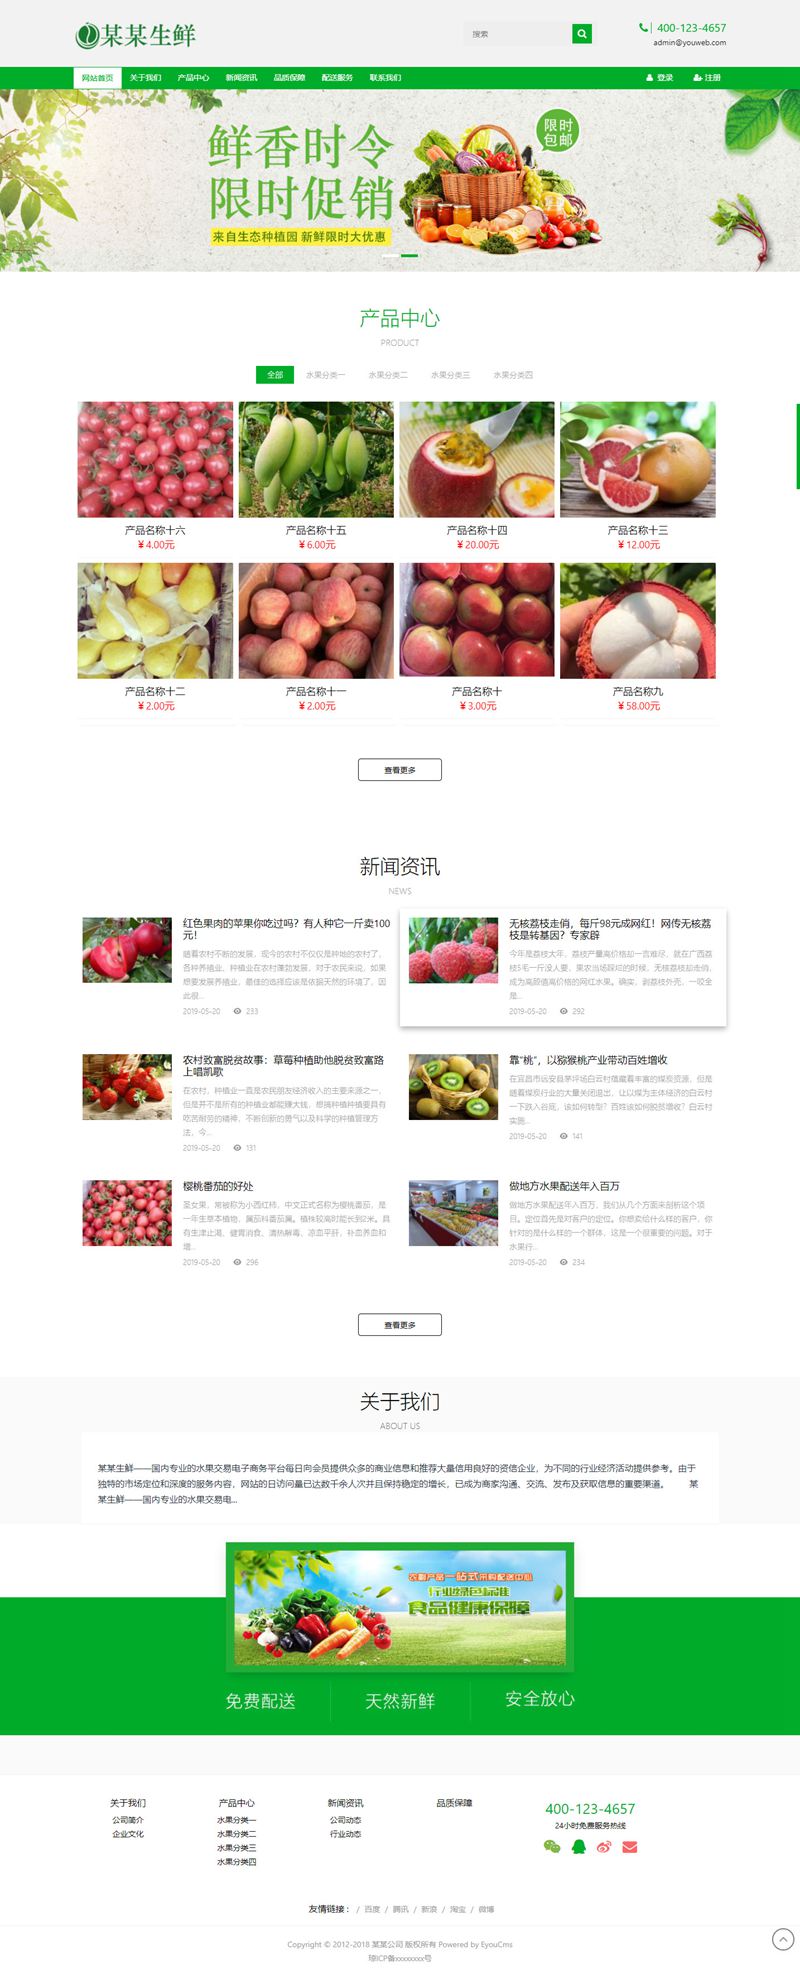 响应式易优cms 绿色水果/生鲜/农产品企业网站源码 自适应手机端